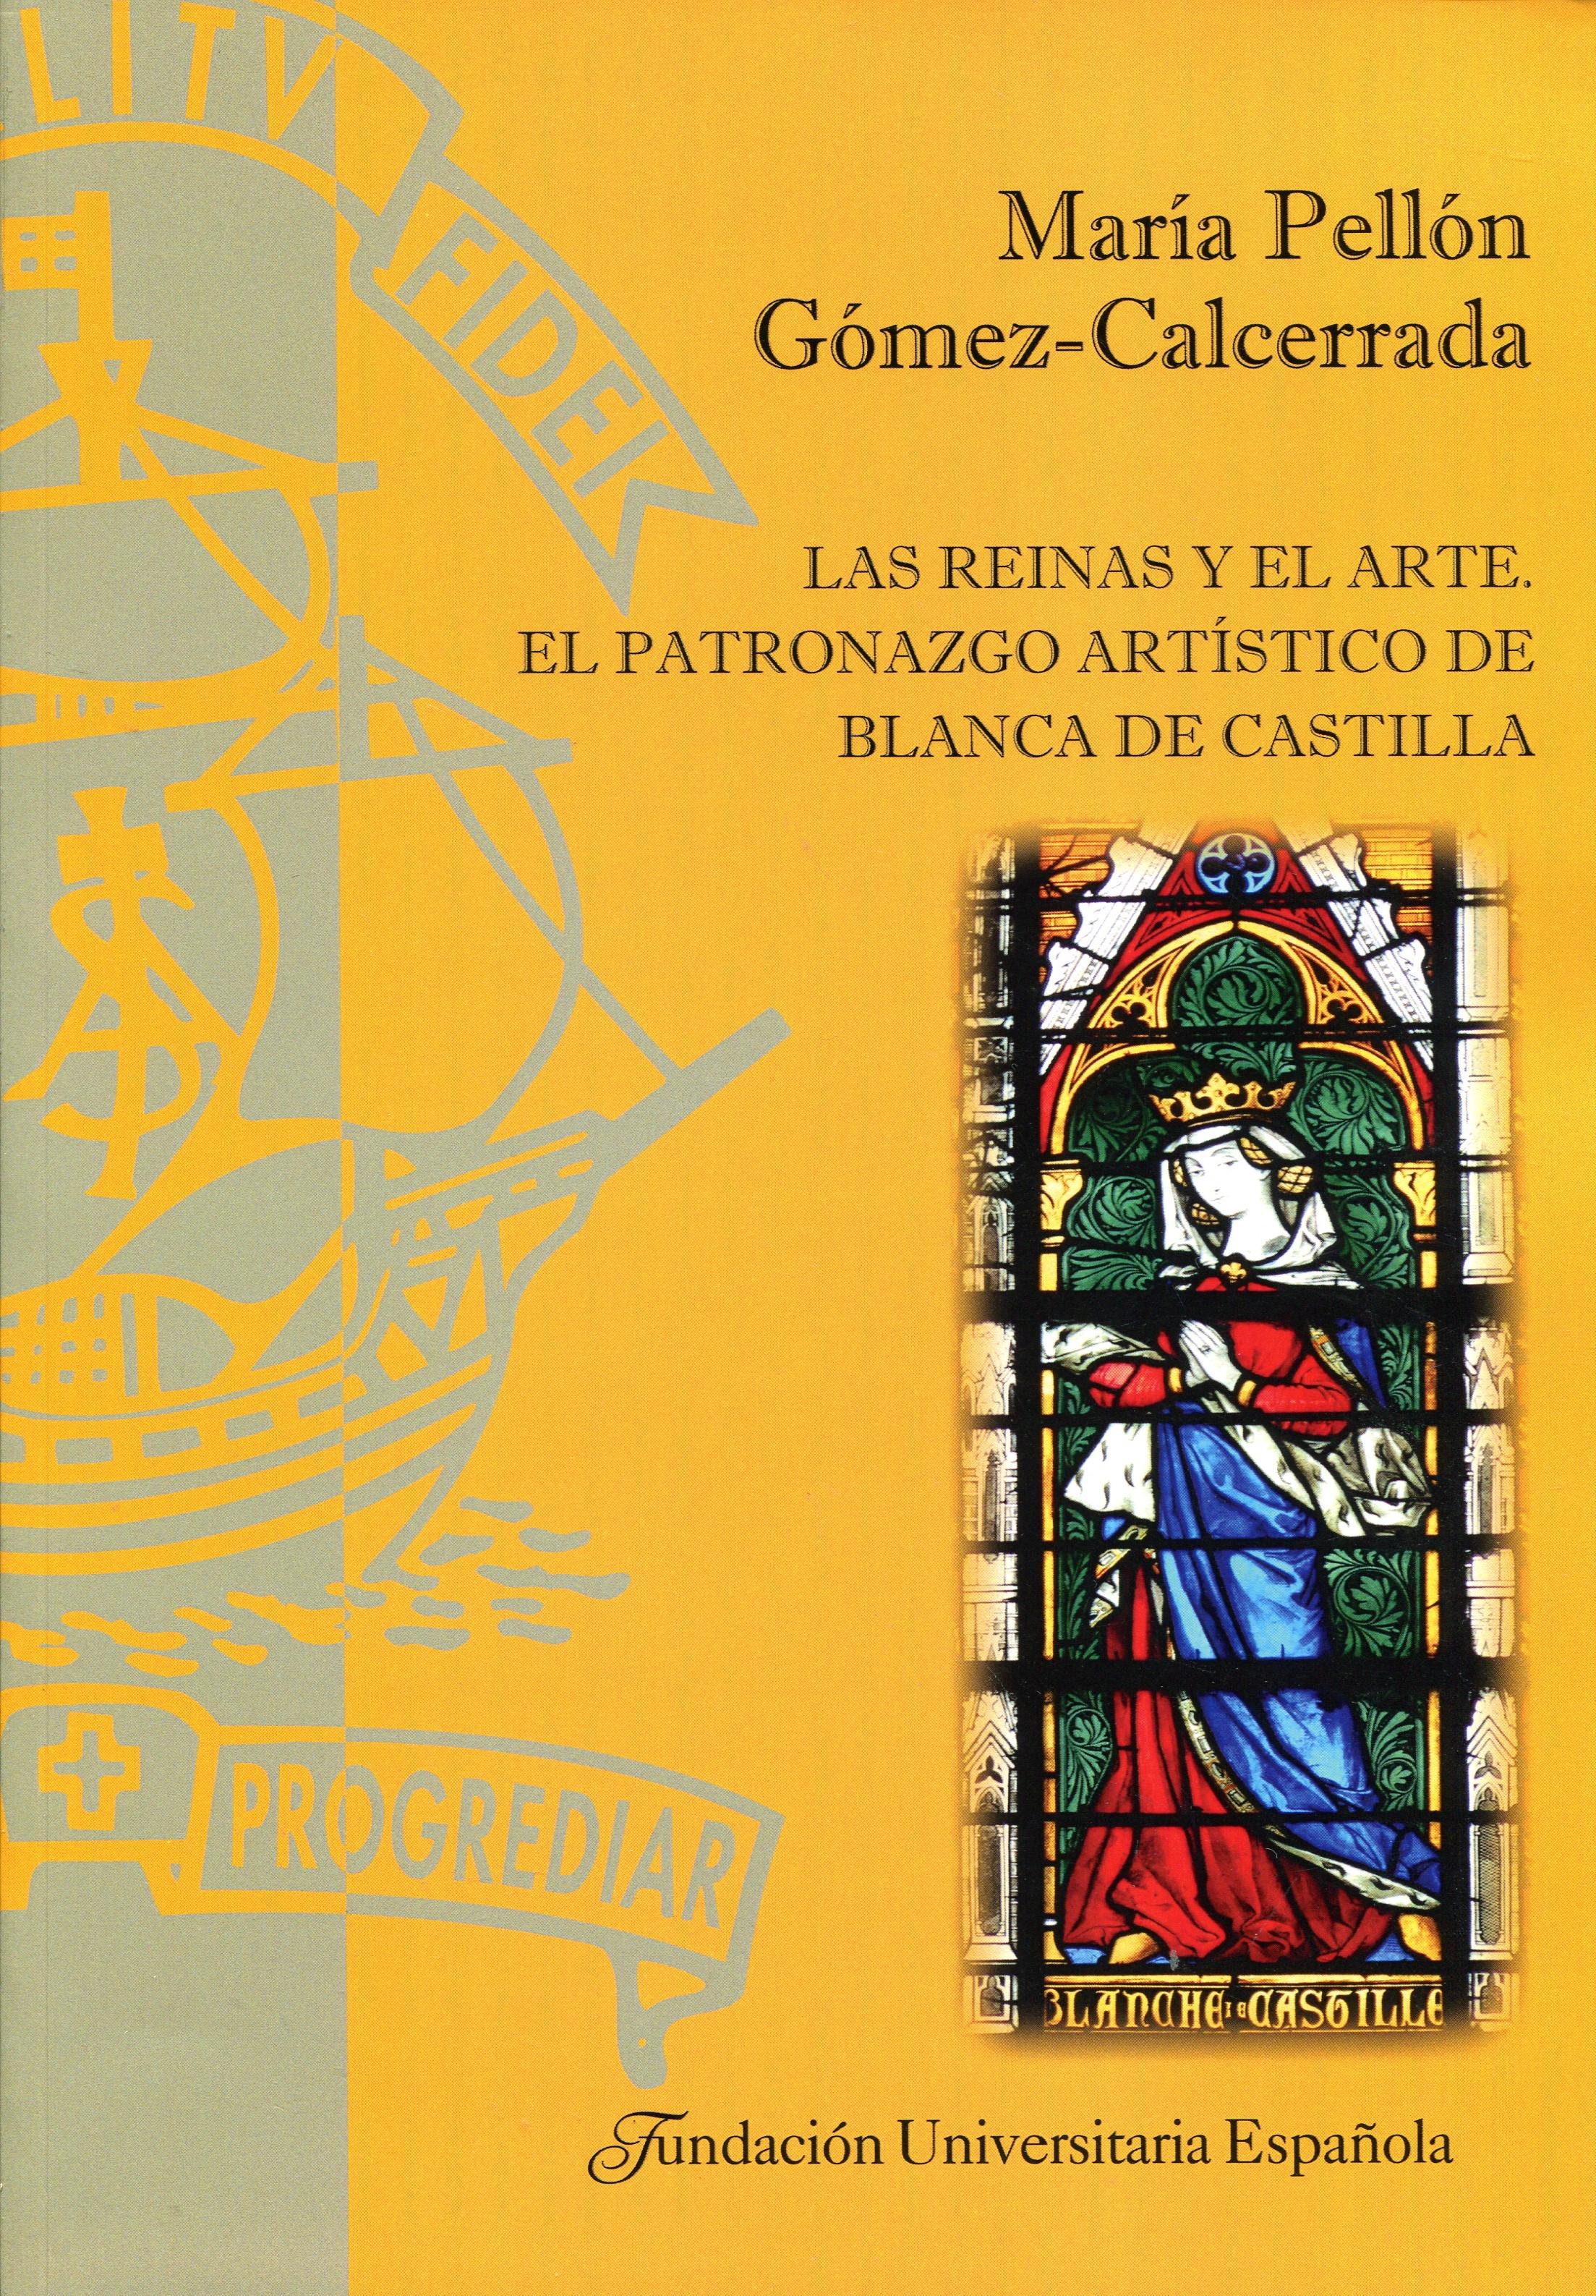 Las reinas y el arte "El patronazgo artístico de Blanca de Castilla". 